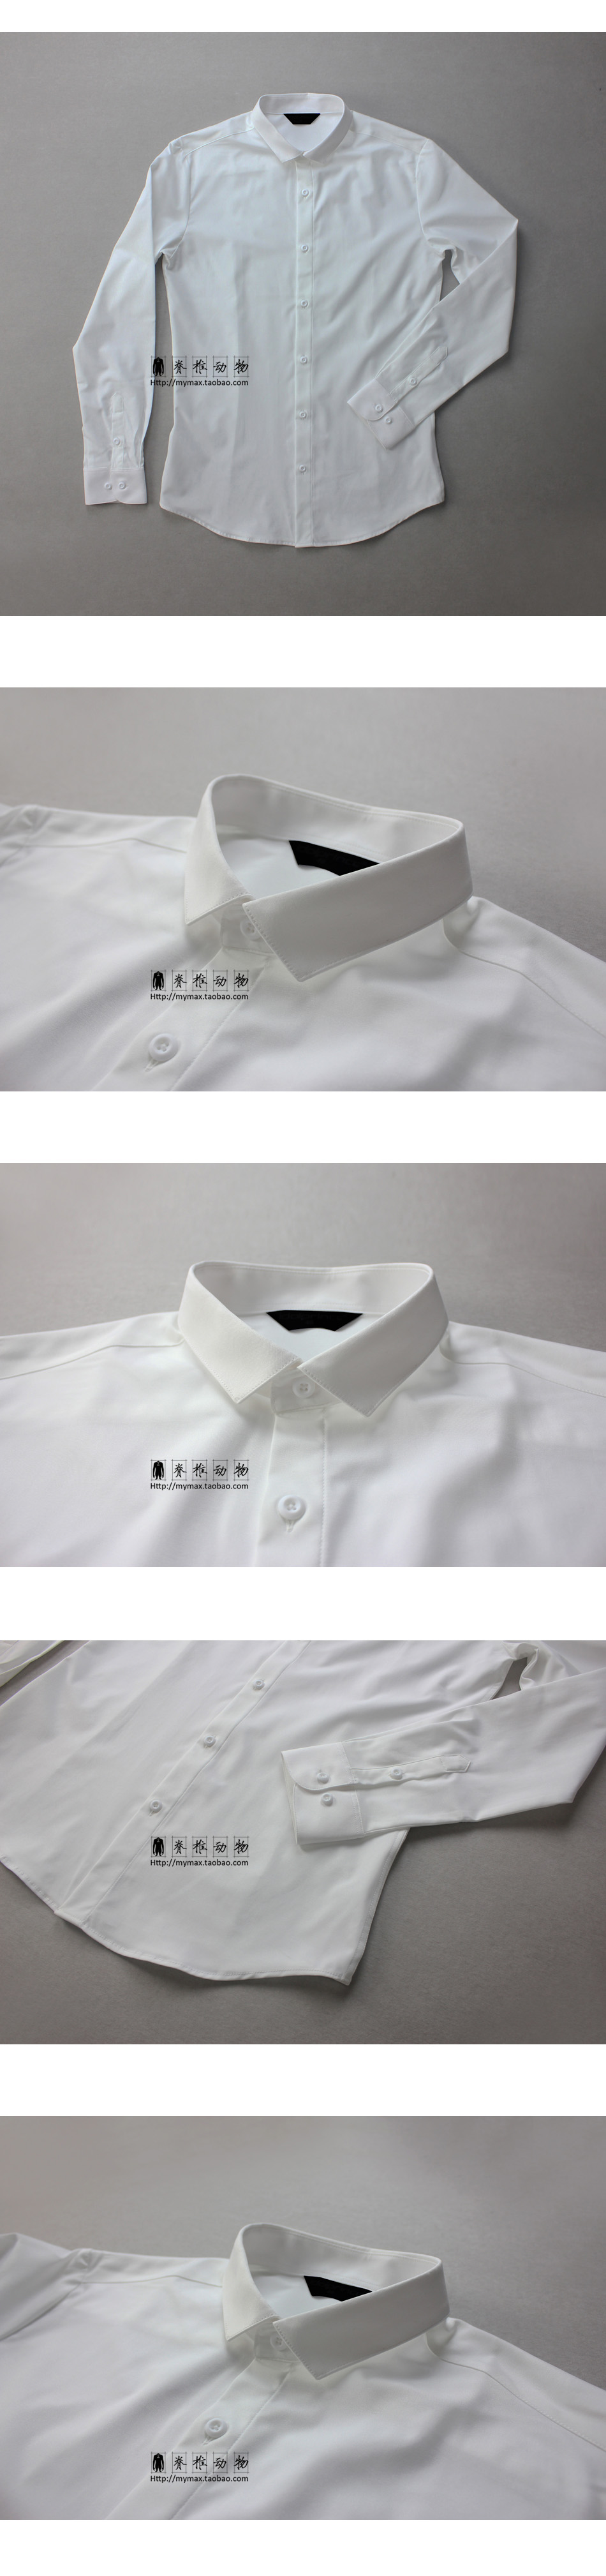 Vertebrate của Nam Giới Gốc Hàn Quốc Cổ Điển Slim Shirt Kinh Doanh Không Nhăn Chống Nhăn Dài Tay Áo Sơ Mi Trắng